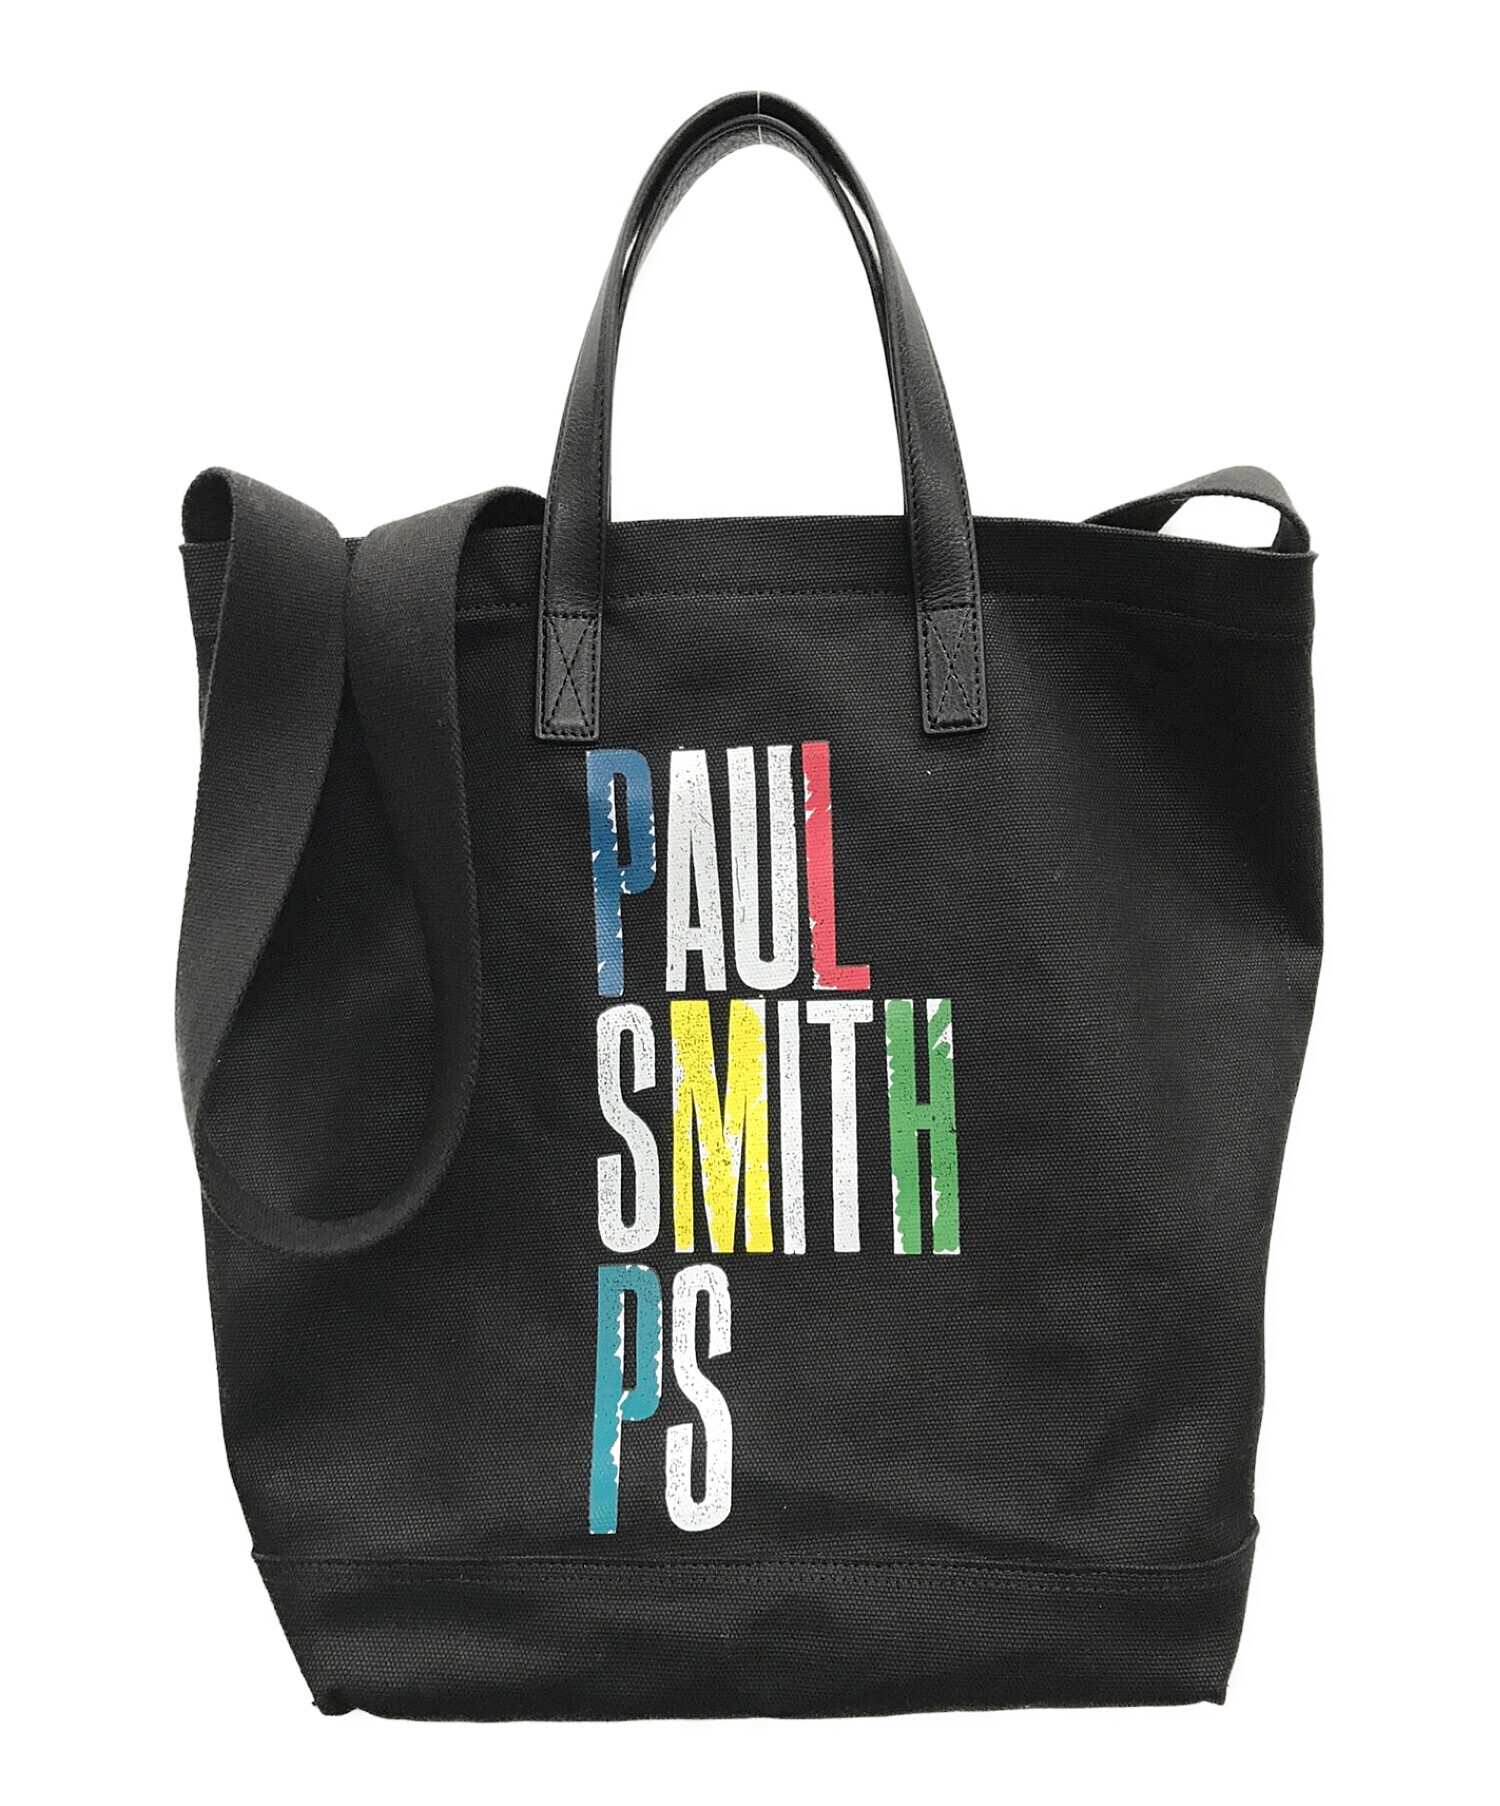 PAUL SMITH (ポールスミス) グラフィックショッパー2WAYラージバッグ ブラック サイズ:実寸サイズにてご確認ください。